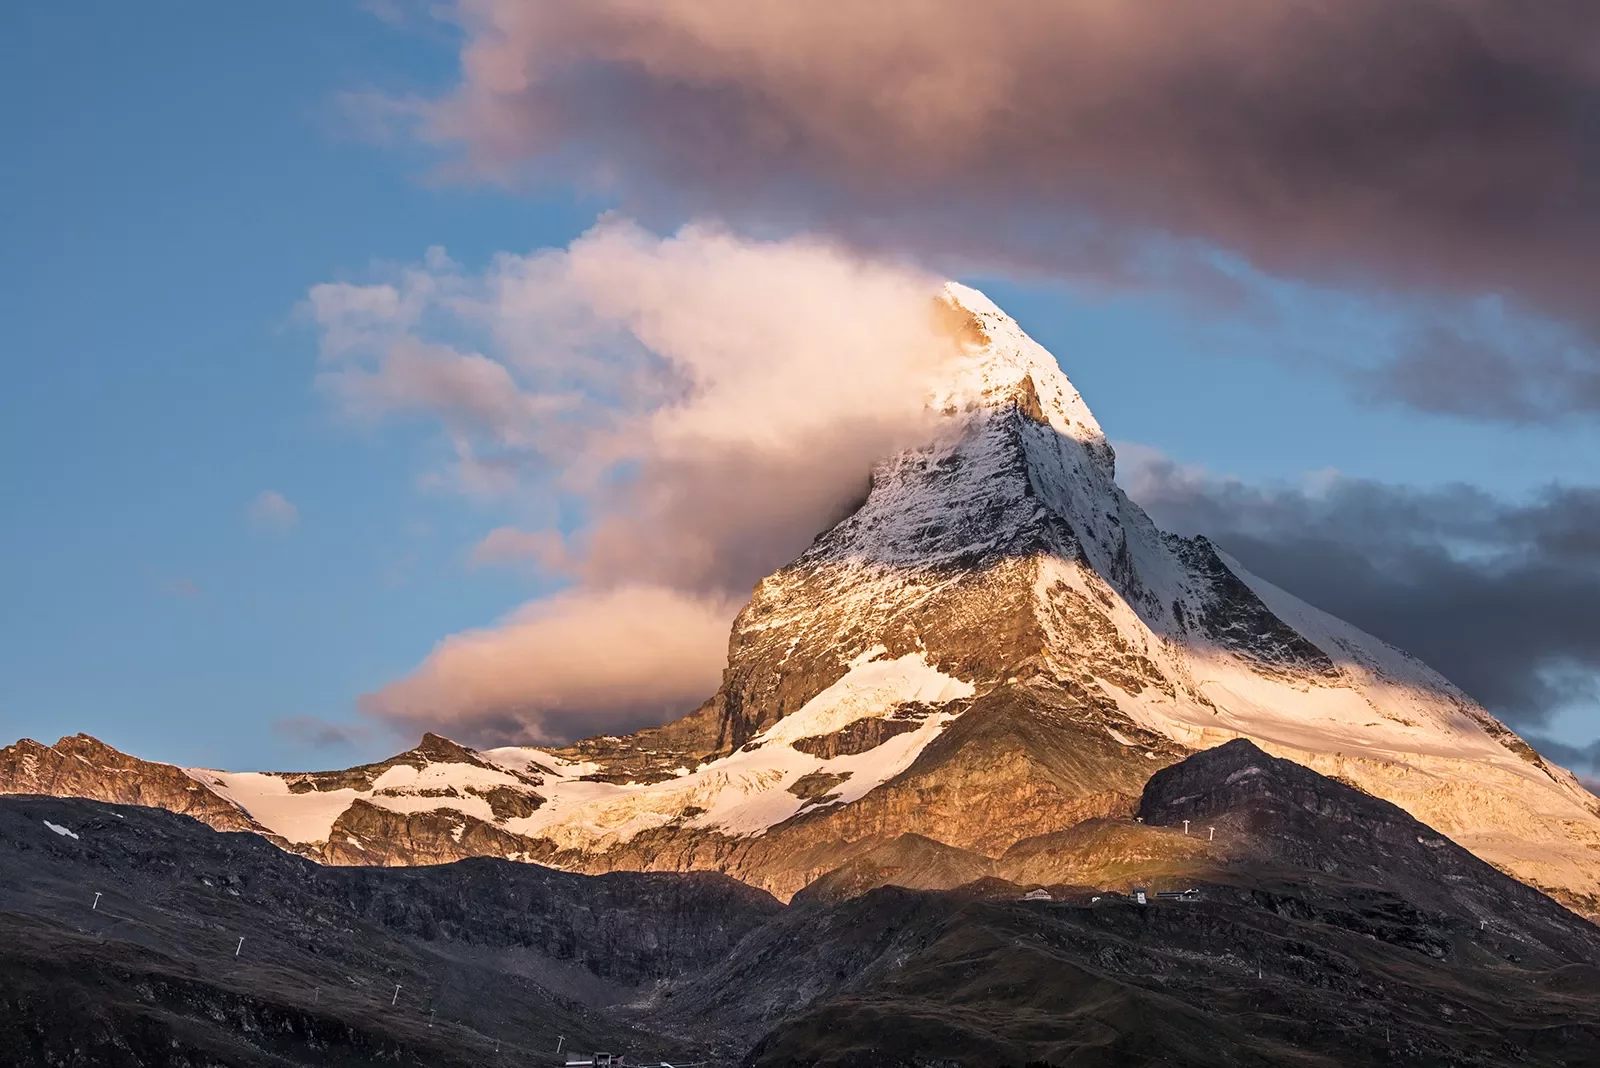 Matterhorn during sunset.